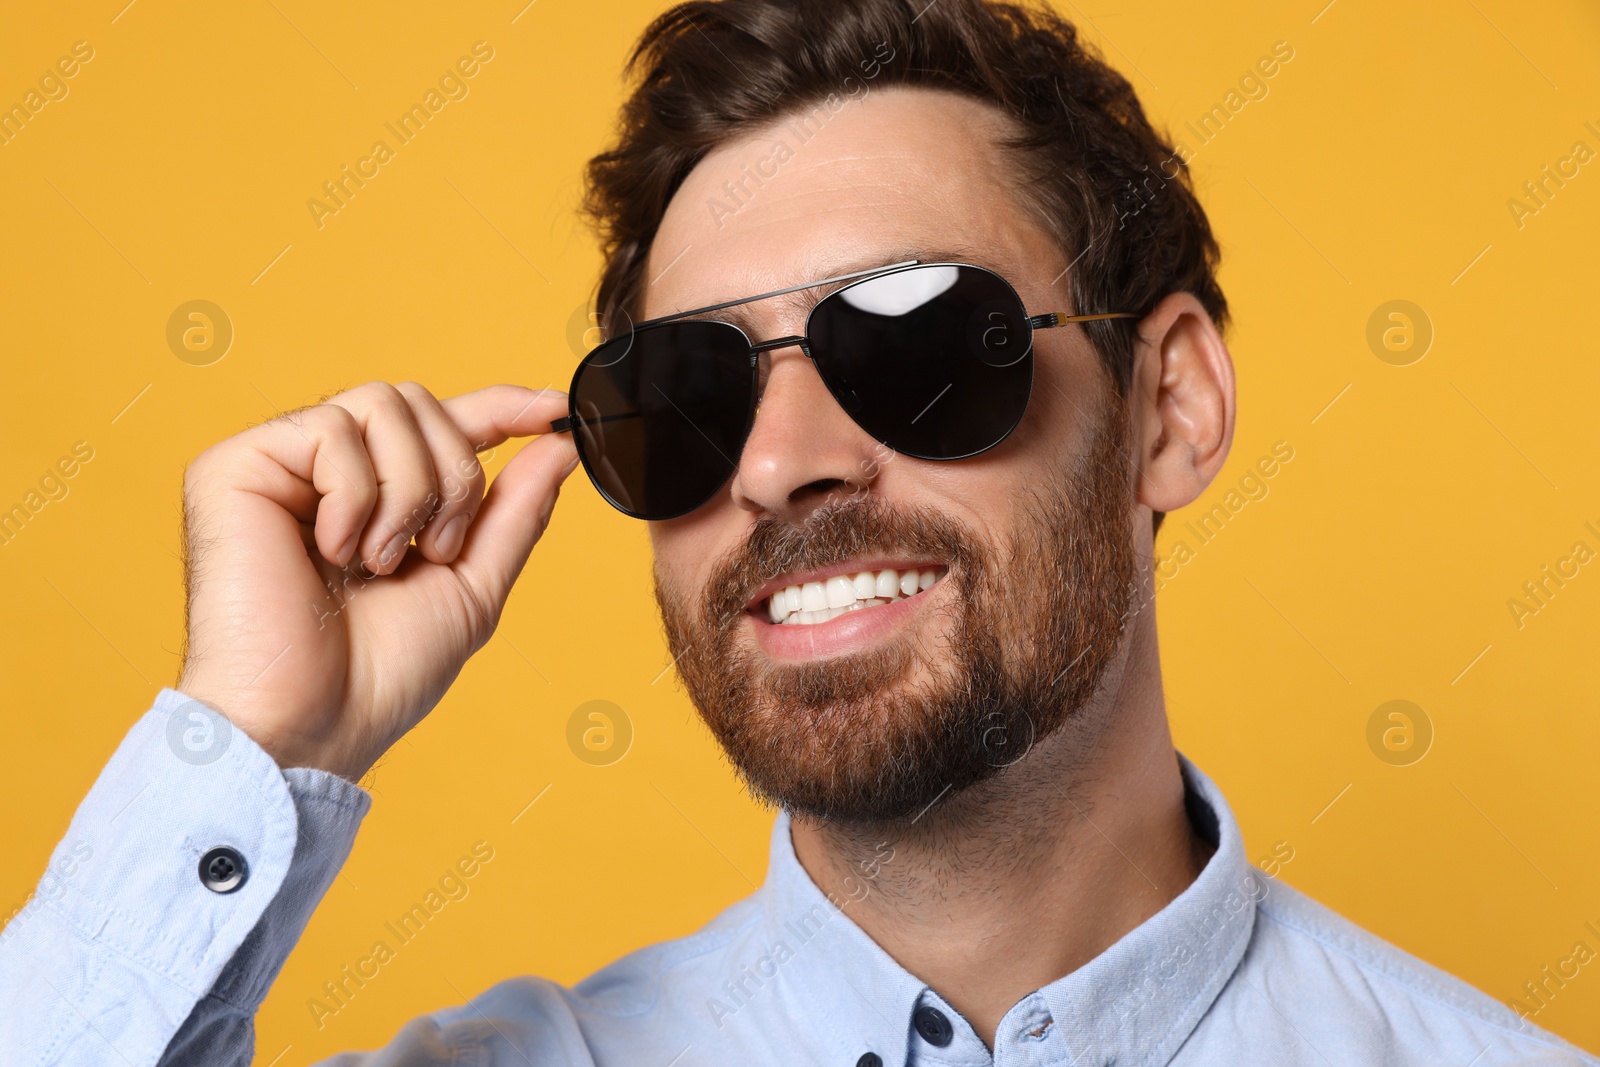 Photo of Portrait of smiling bearded man with stylish sunglasses on orange background, closeup